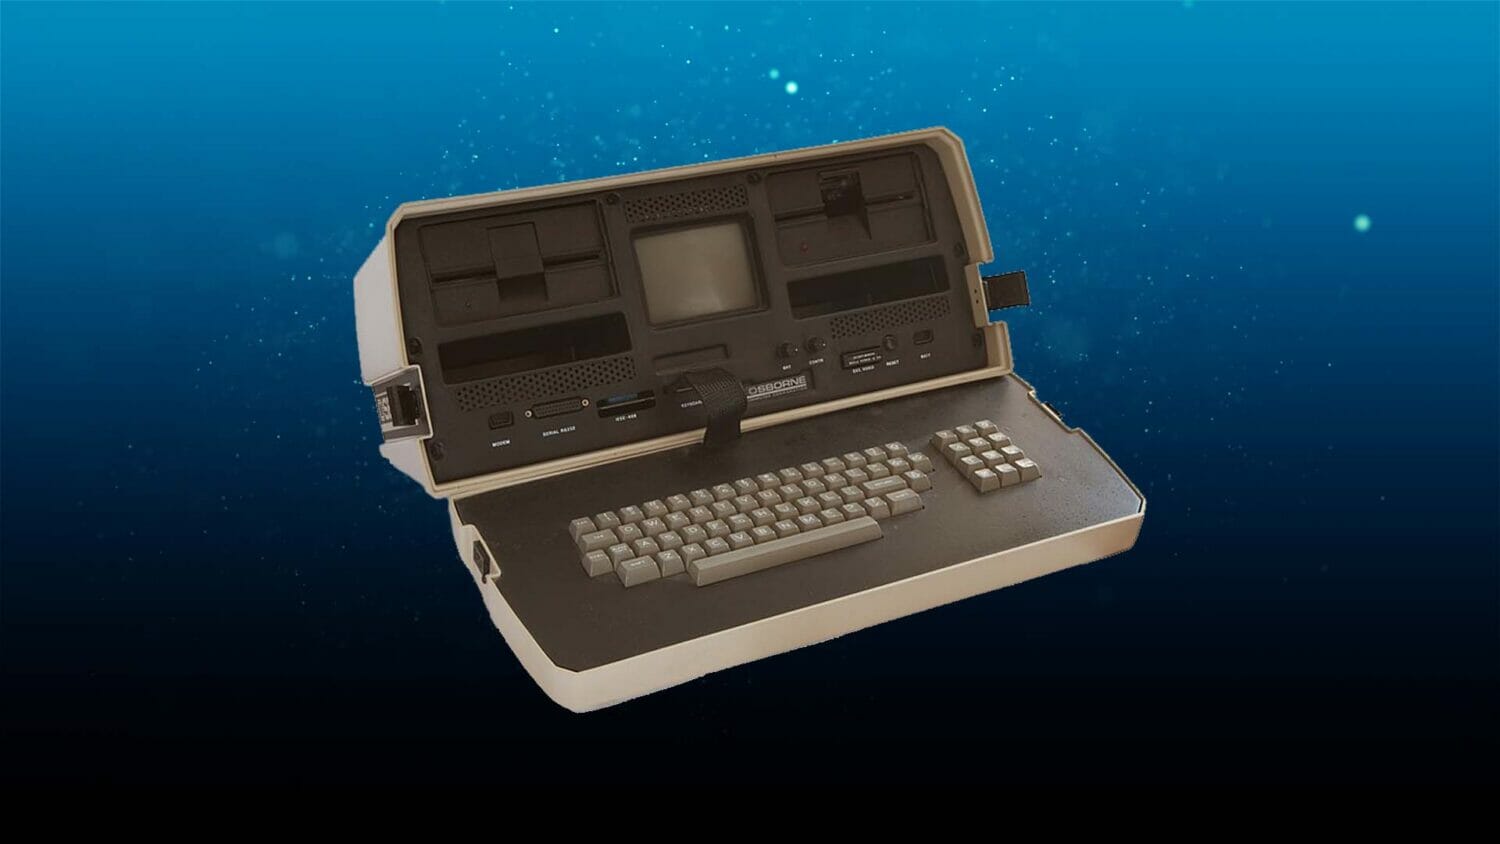 The old Osborne 1 laptop